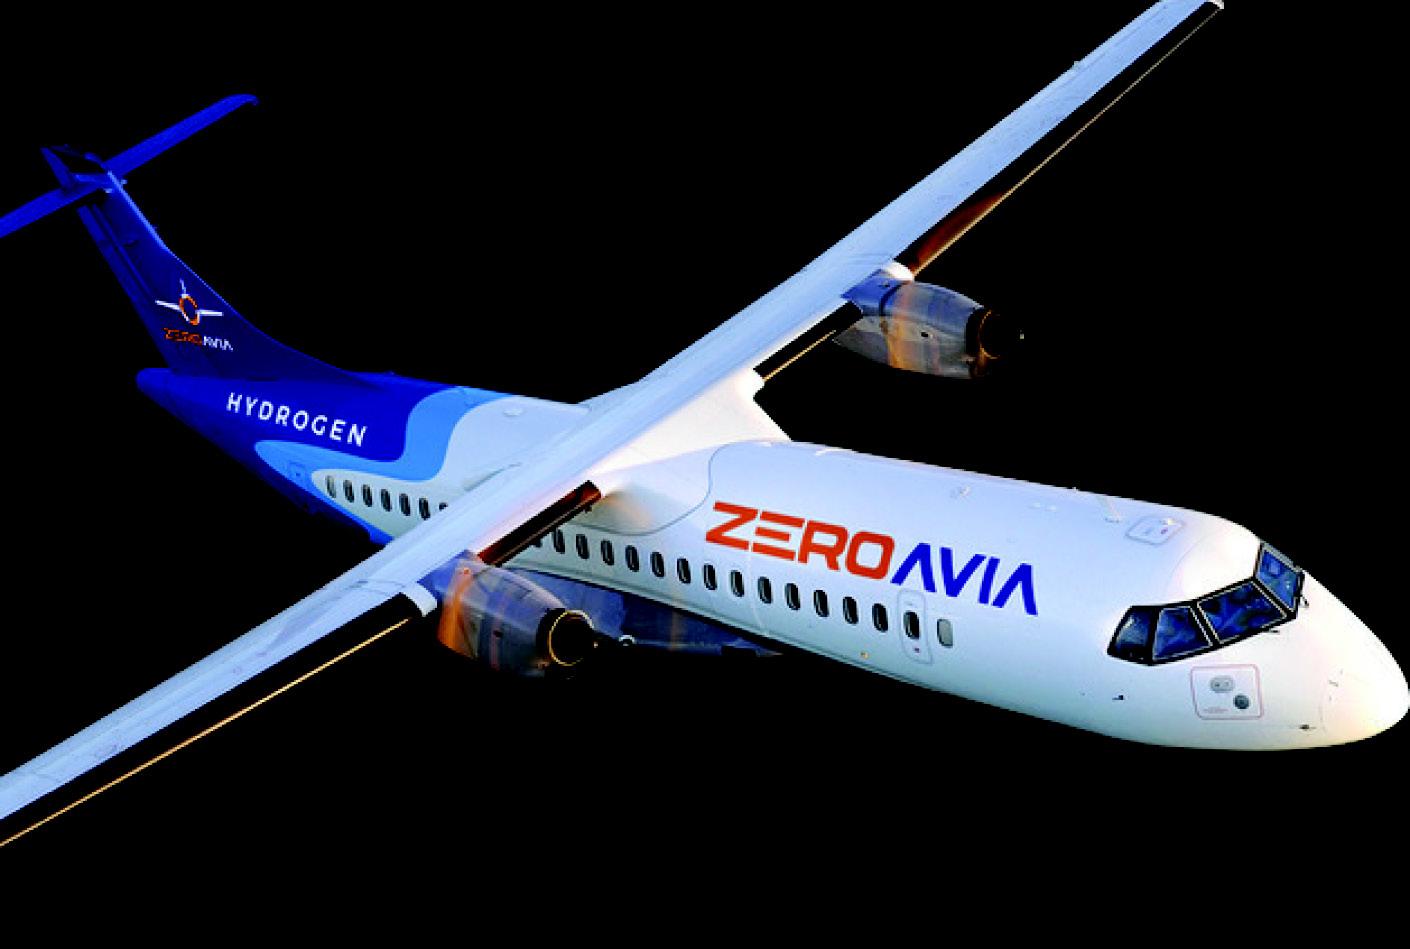 zero avia future of green aviation